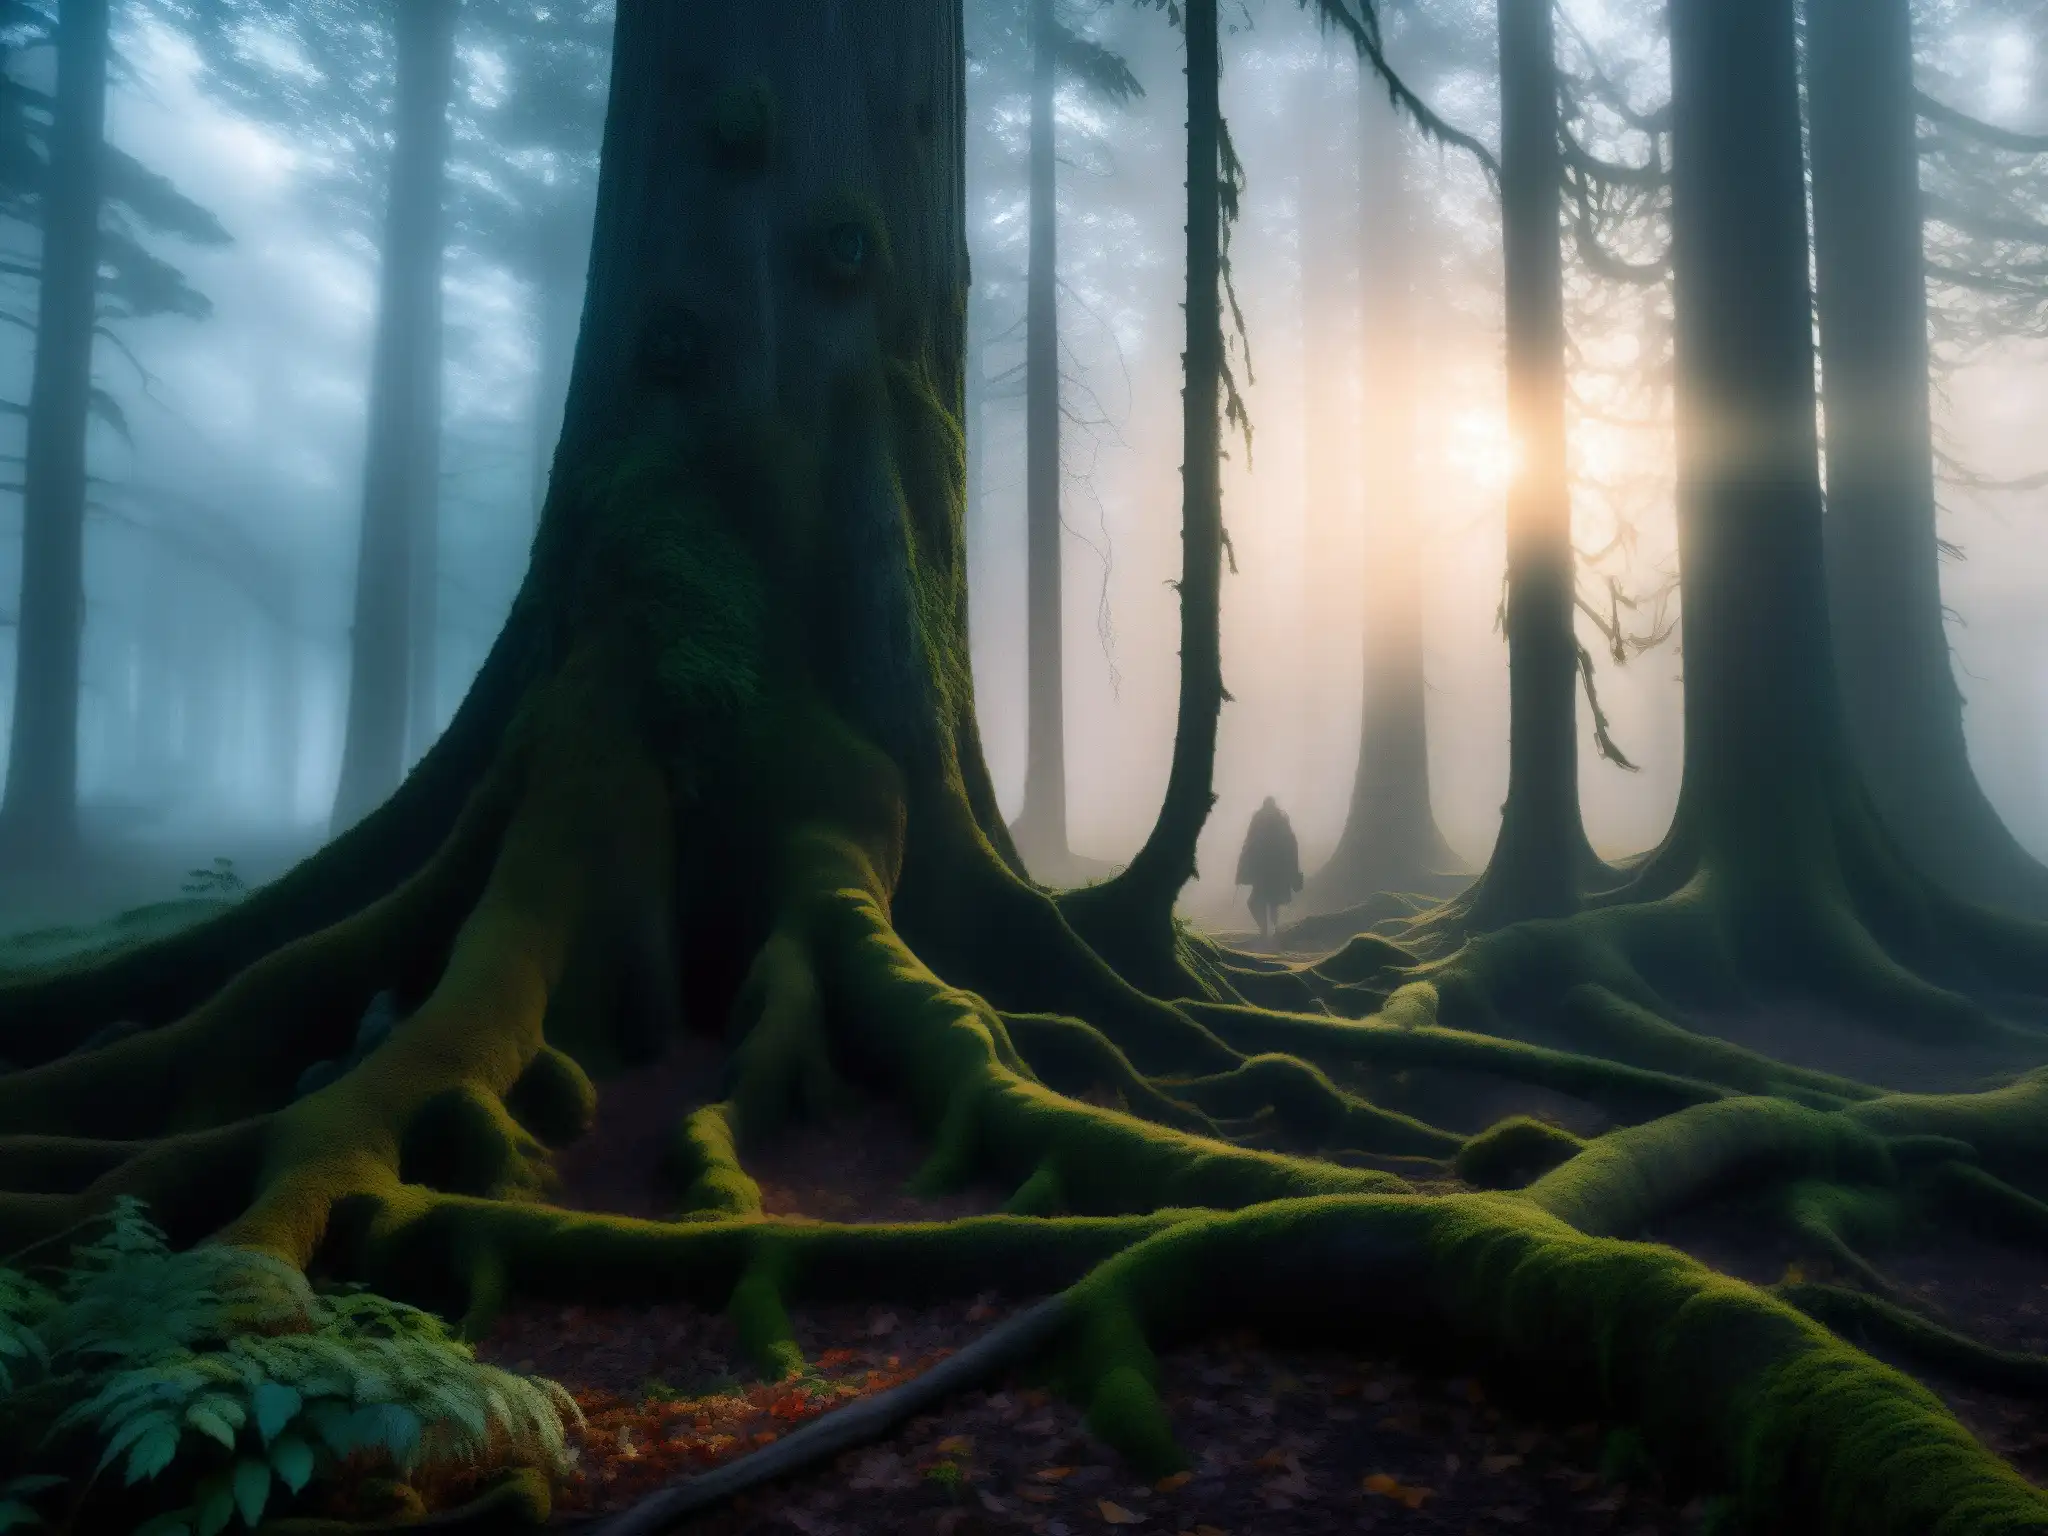 Un bosque oscuro y brumoso al anochecer, con árboles retorcidos y maleza enredada, revela una atmósfera inquietante